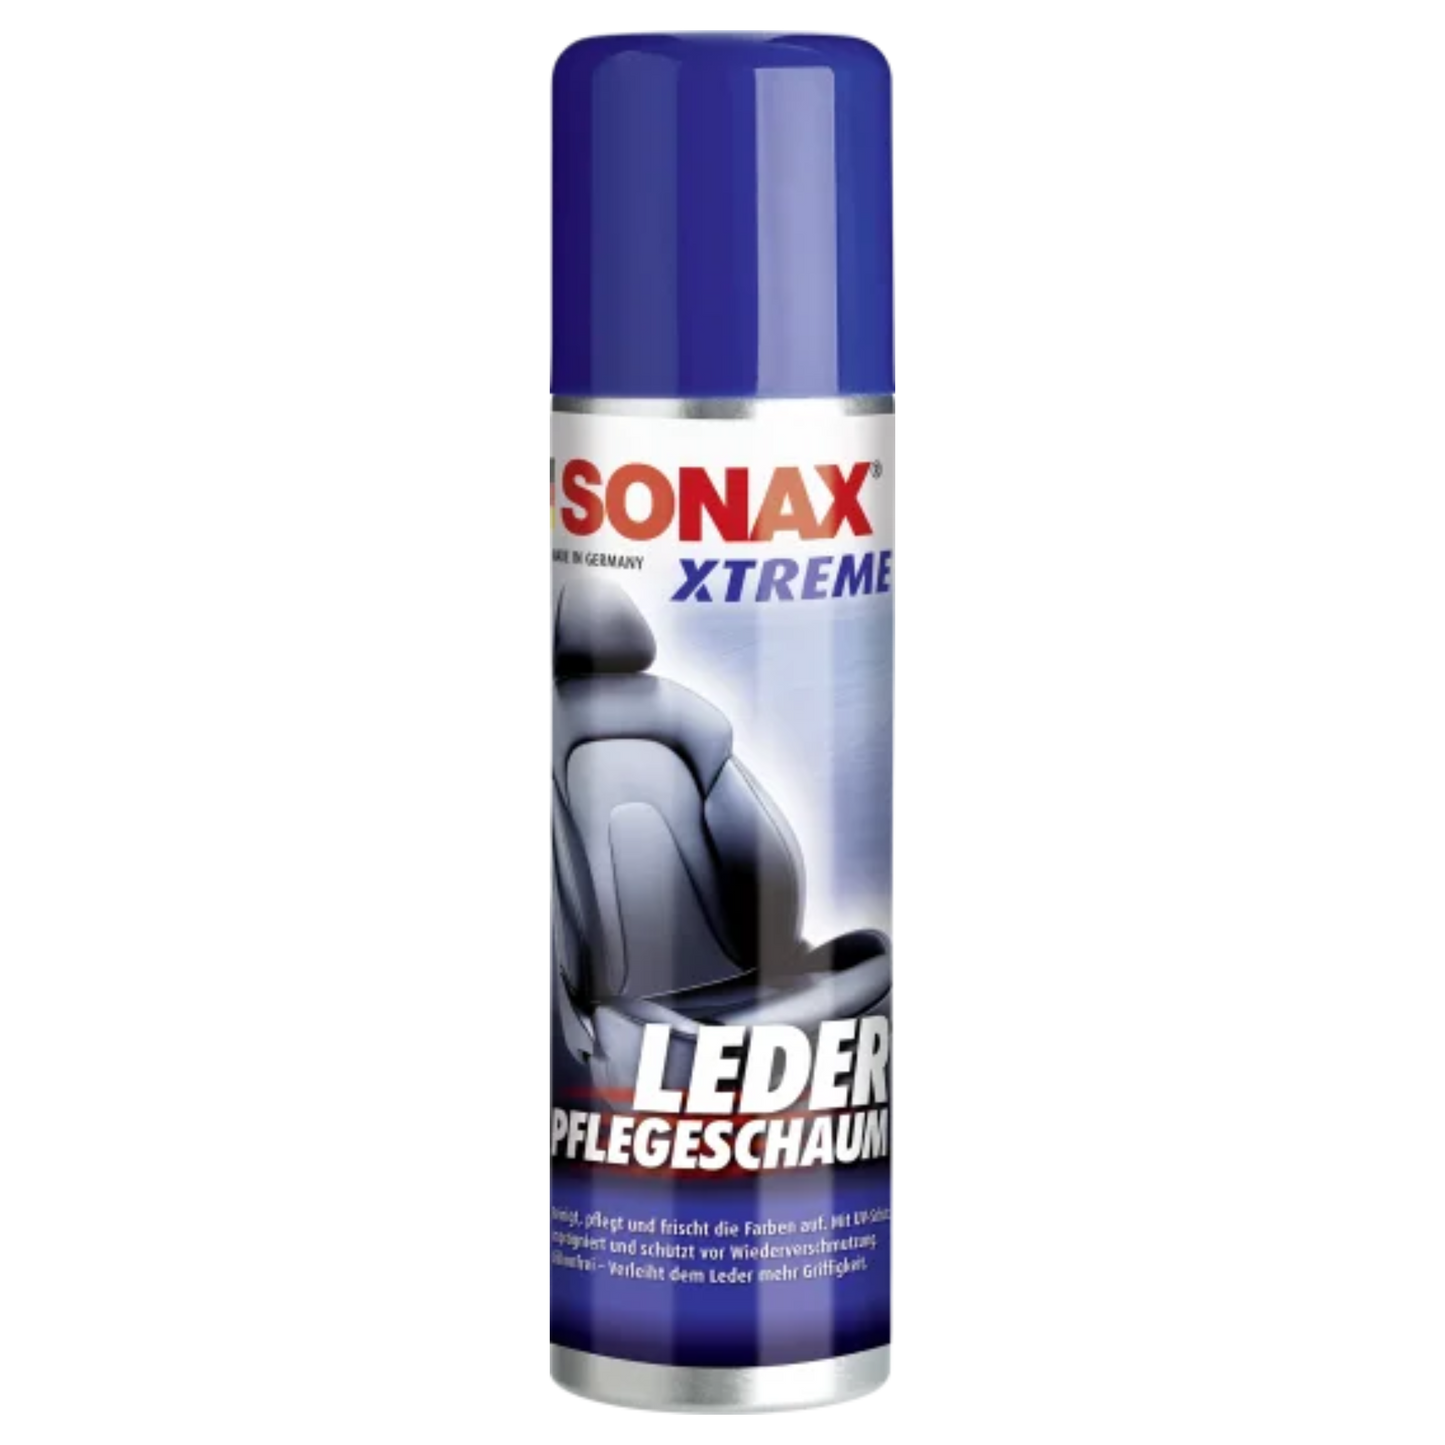 SONAX XTREME Lederpflegeschaum - 250ml